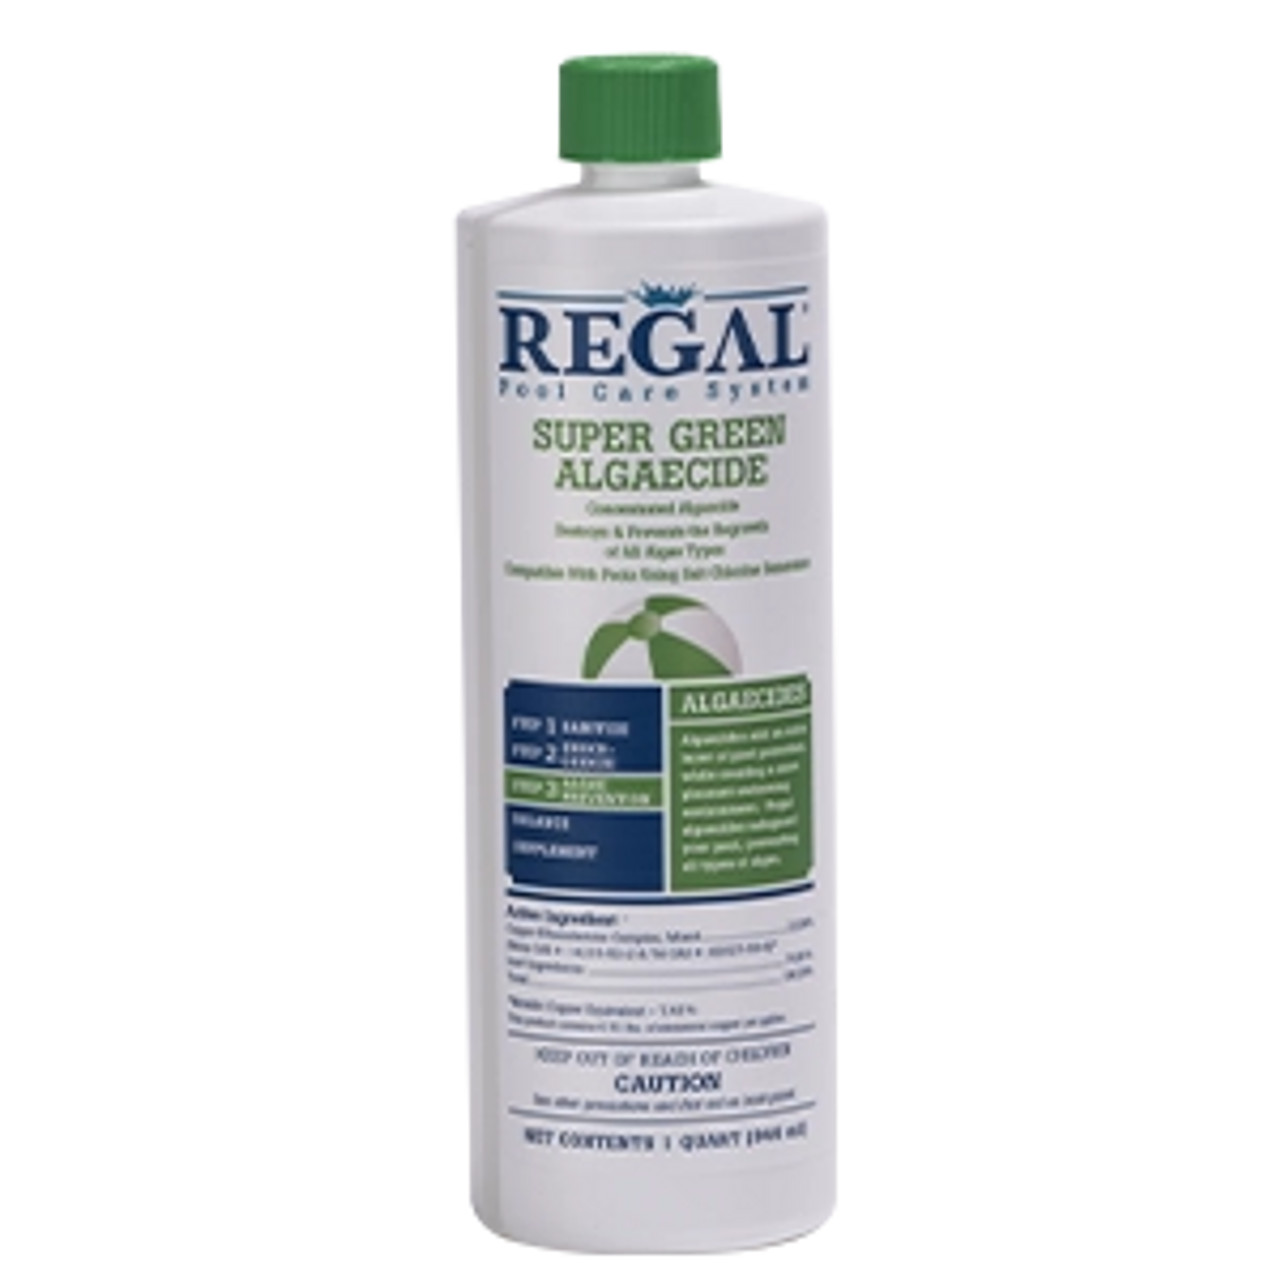 Regal, Pool Chemicals, 1-qt, Super Green, 23%, Copper, Algaecide, 47247600, 035186206168, RGL-50-2674